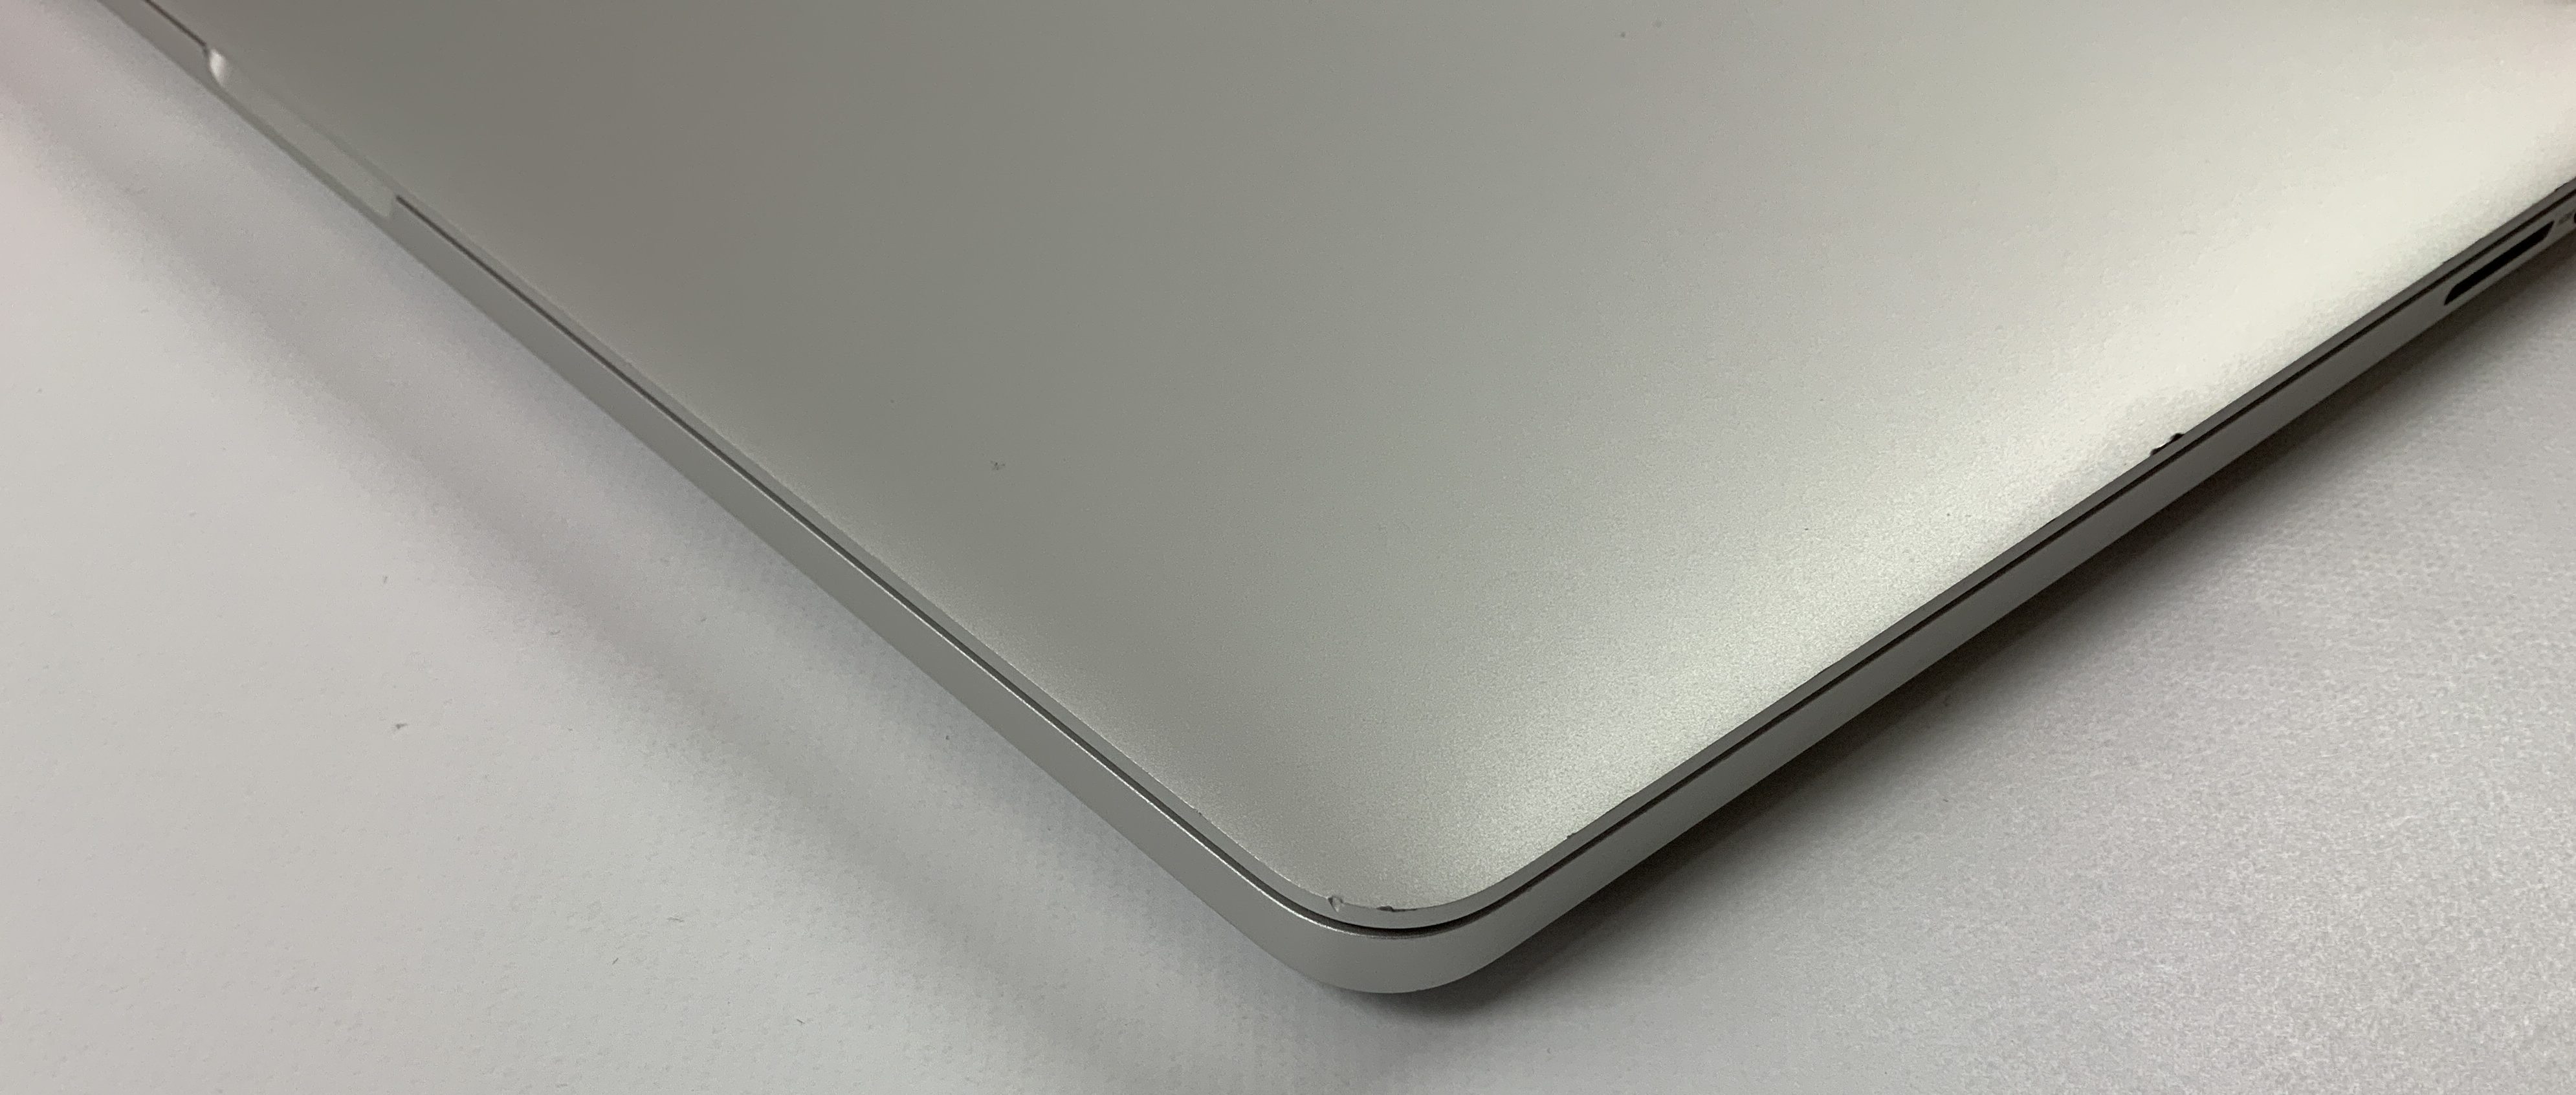 MacBook Pro Retina 15" Mid 2015 (Intel Quad-Core i7 2.2 GHz 16 GB RAM 256 GB SSD), Intel Quad-Core i7 2.2 GHz, 16 GB RAM, 256 GB SSD, imagen 4